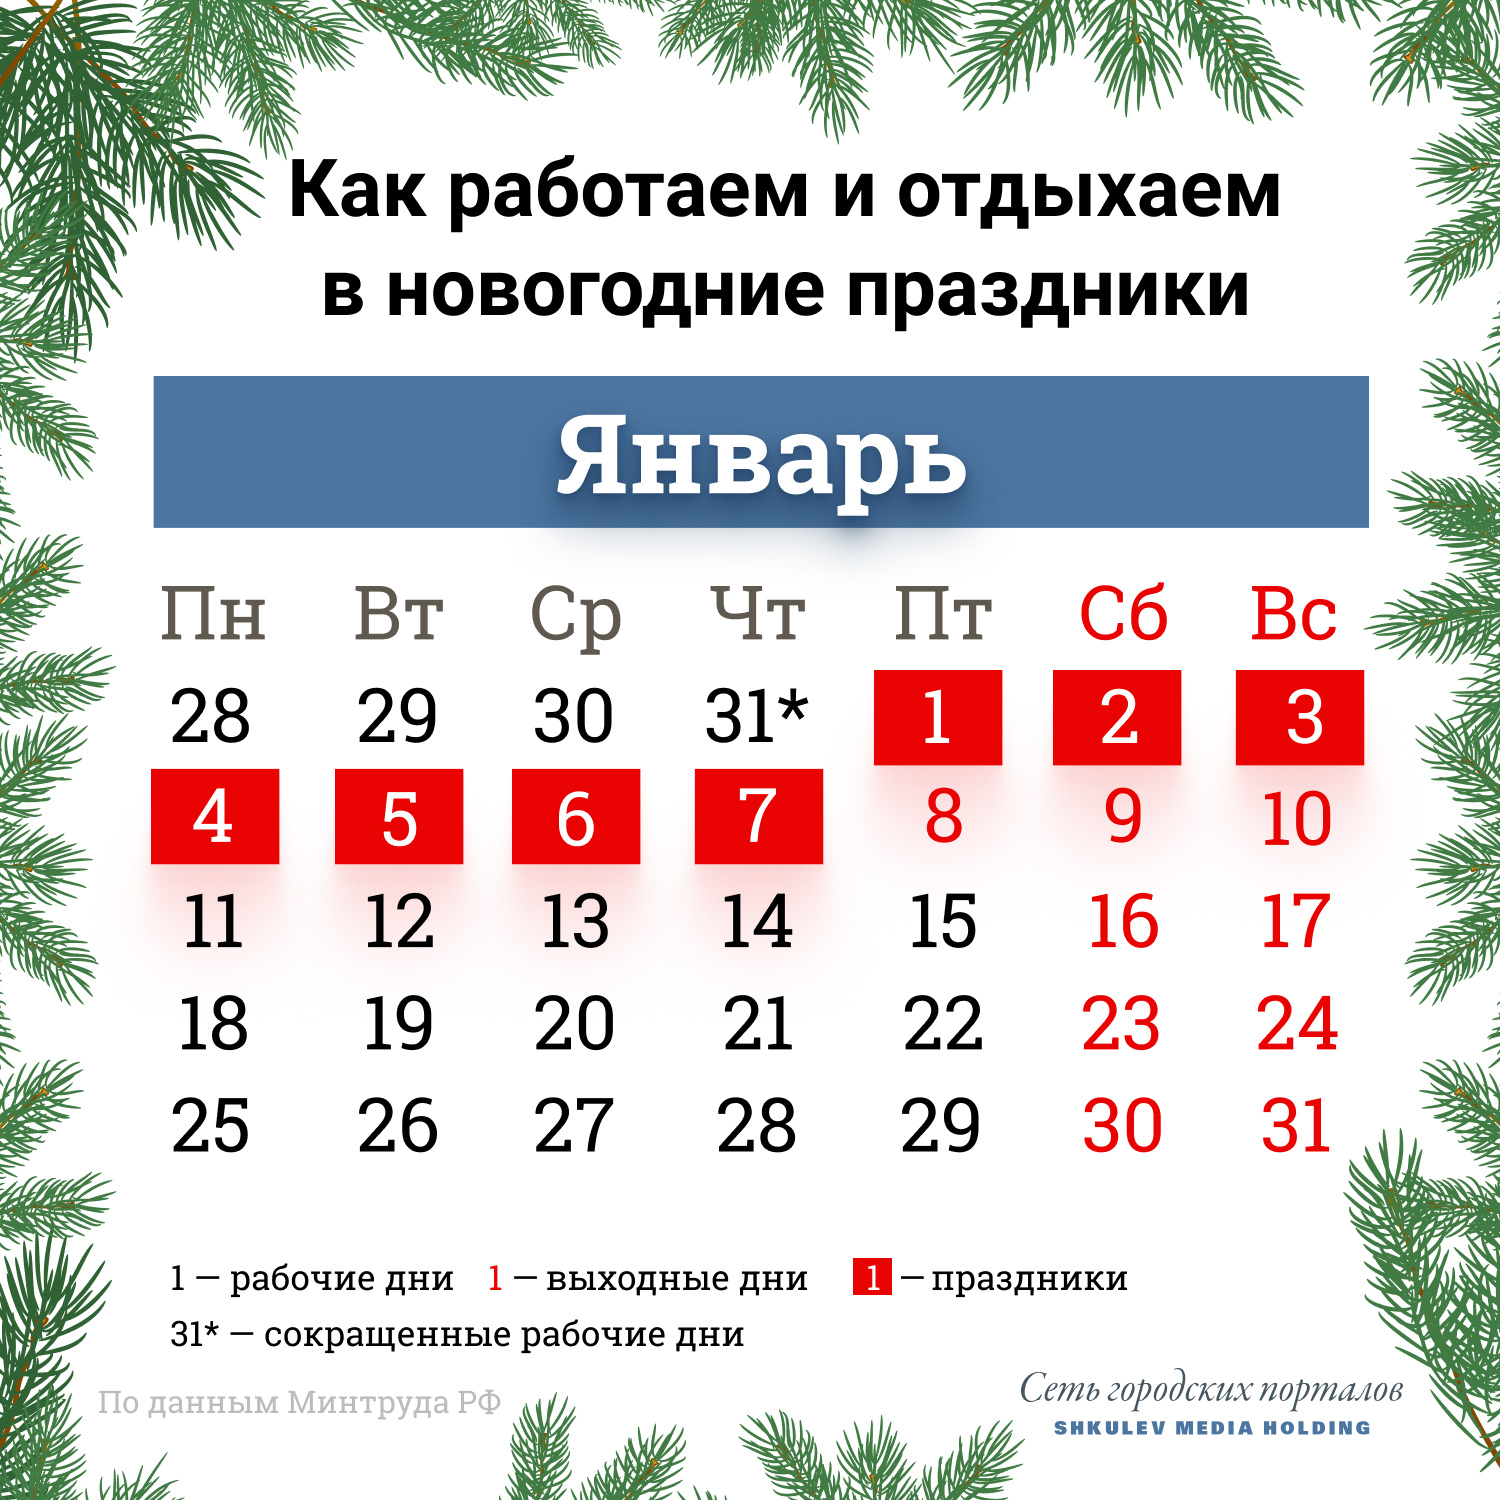 В следующем году 31 декабря уже точно будет выходным днем для всей страны